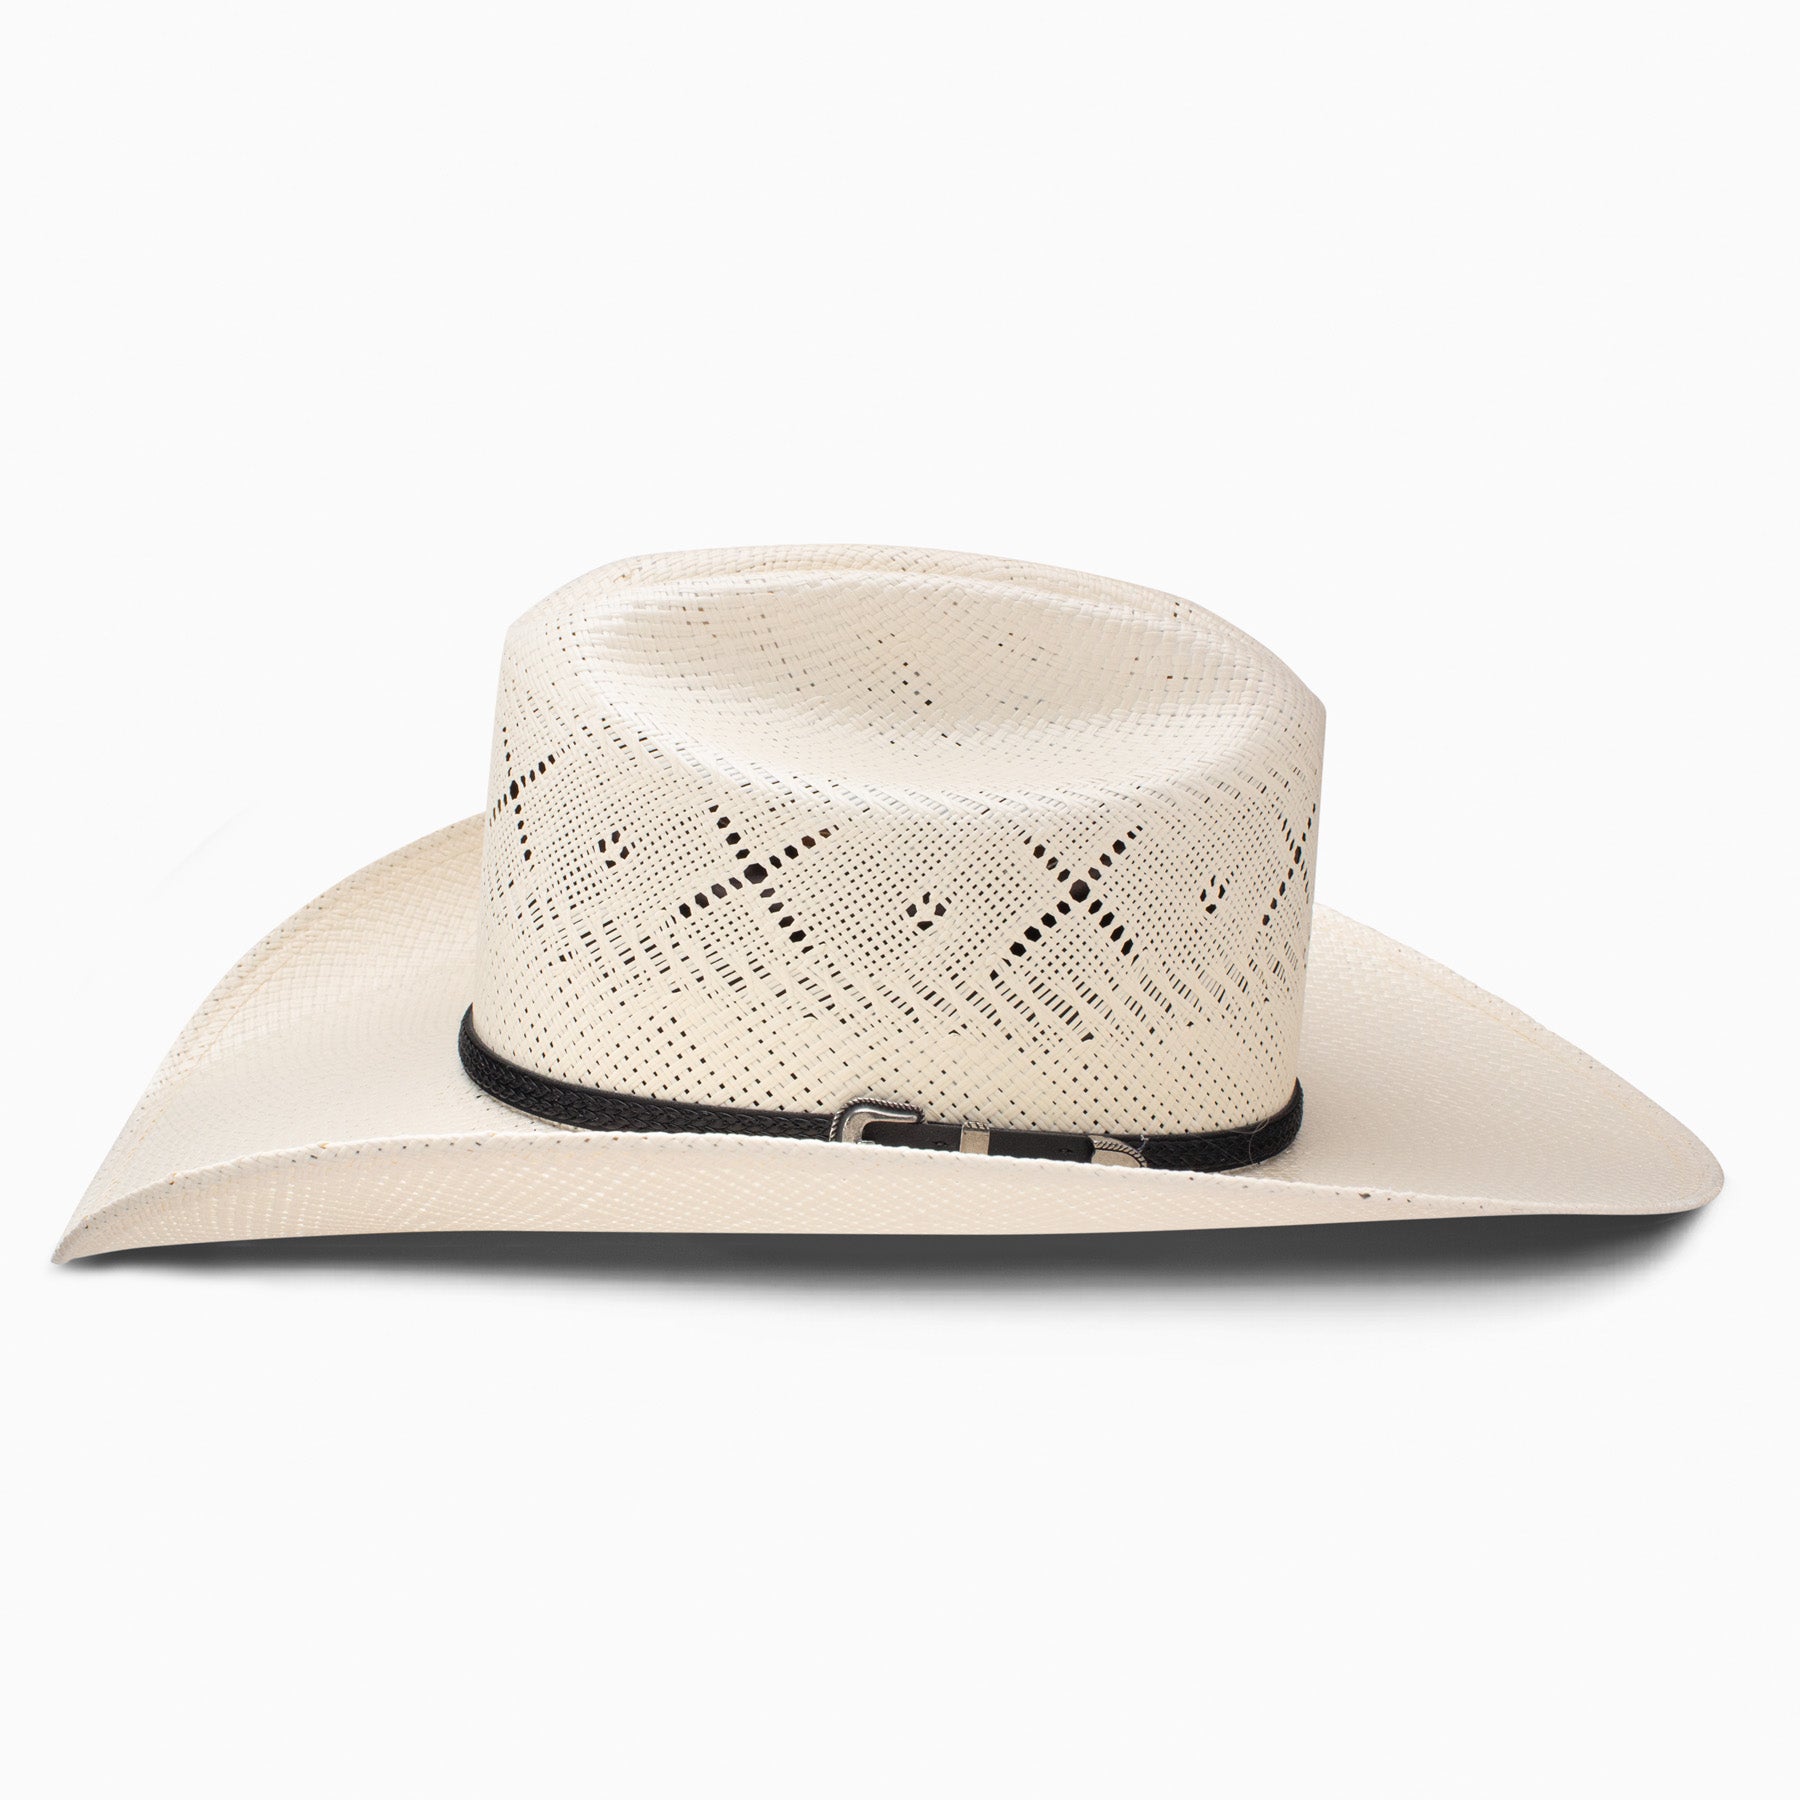 George Strait All My Ex's 20X Shantung Cowboy Hat - One 2 mini Ranch